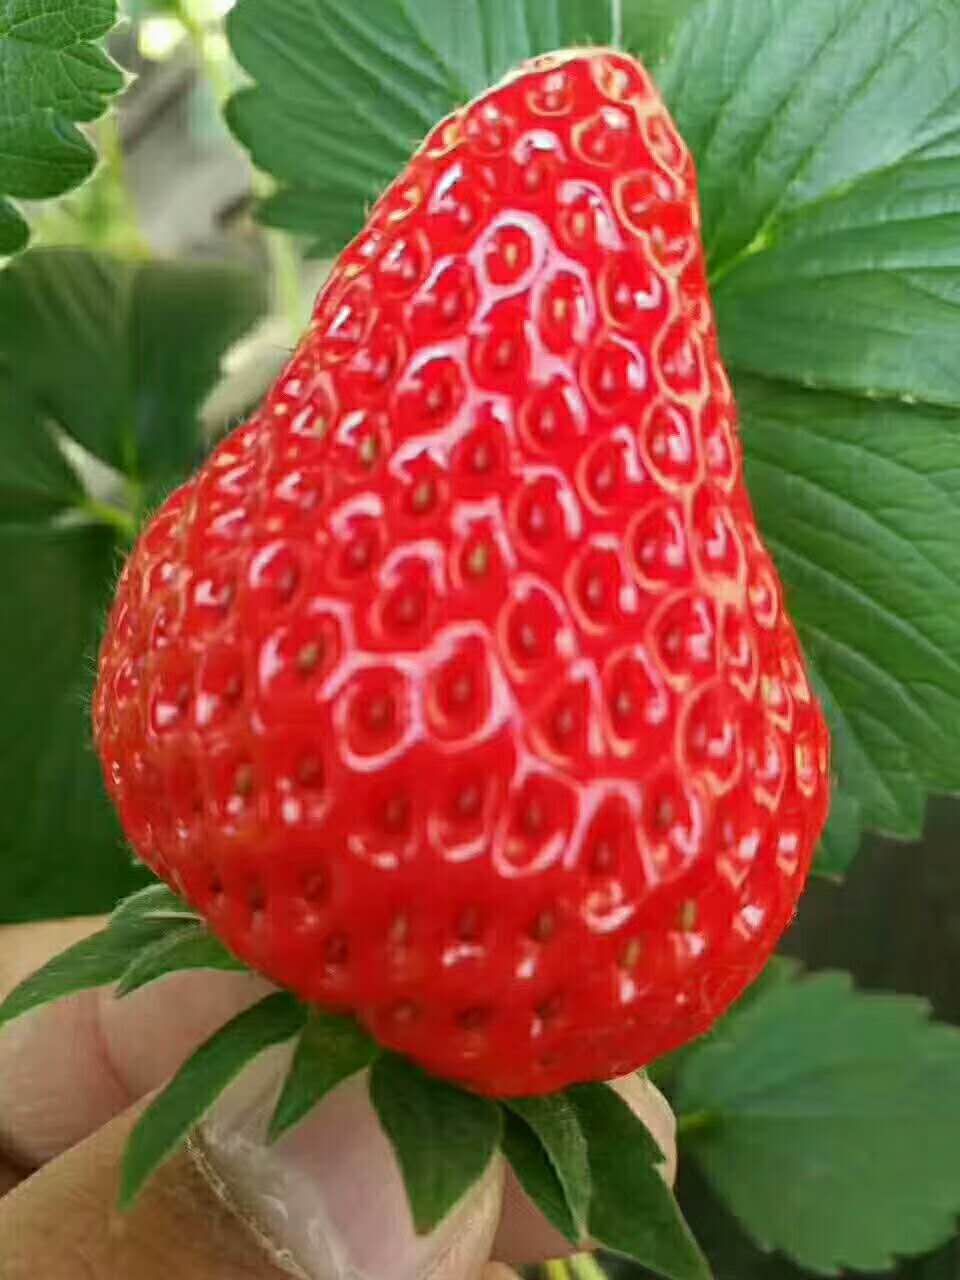 天仙醉草莓苗多少钱一株、上海嘉定天仙醉草莓苗报价